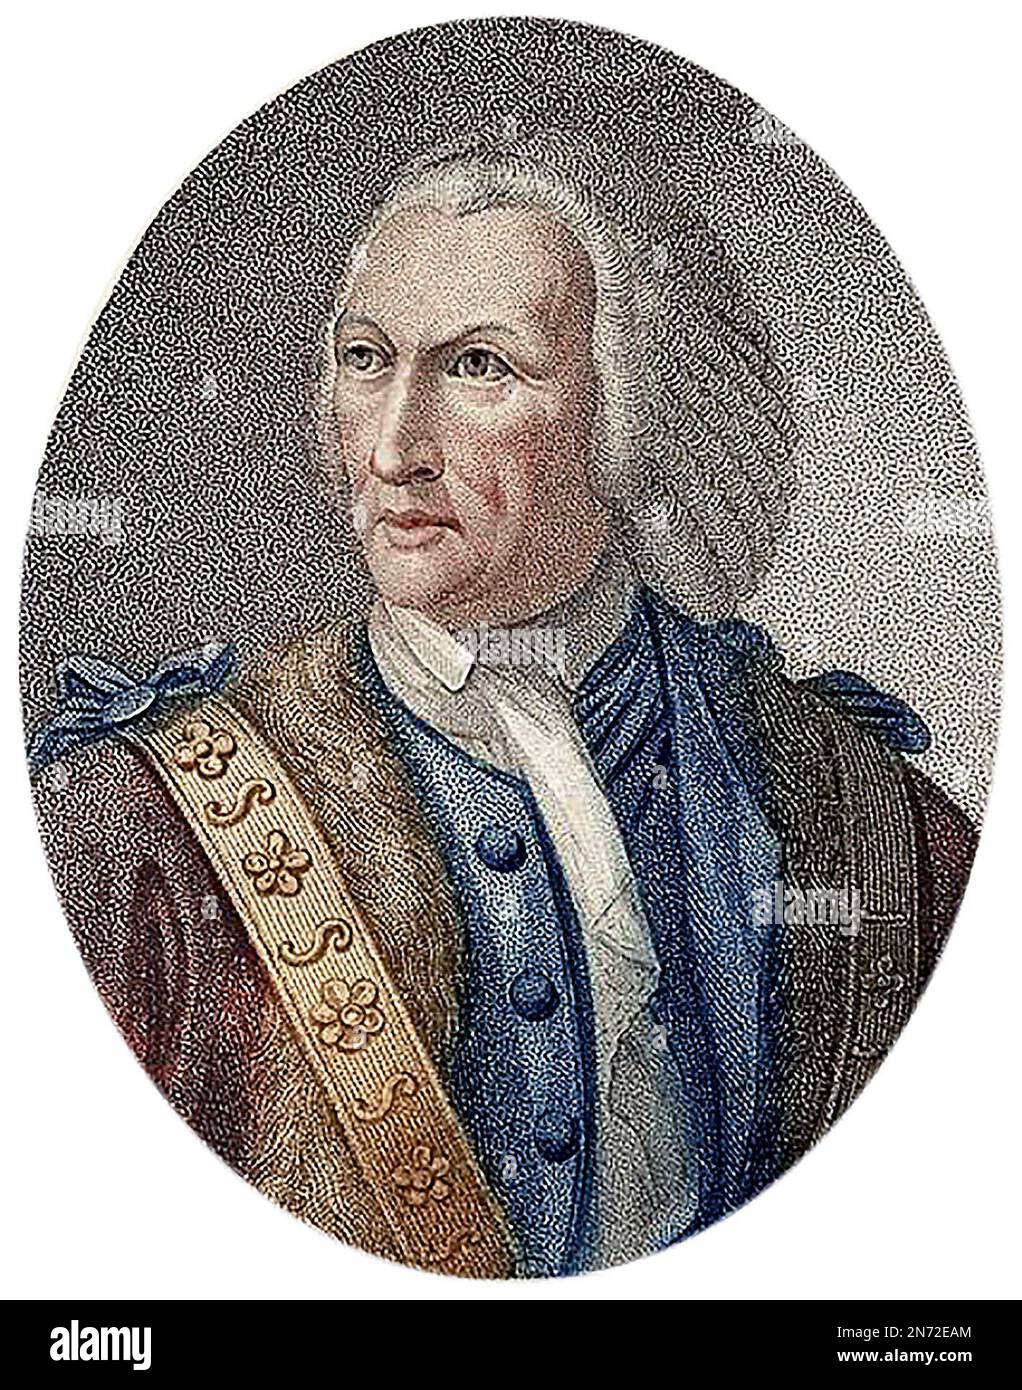 William Beckford. Porträt der englischen politischen Persönlichkeit, die zweimal Lord Mayor of London war, William Beckford (1709-1770) Stockfoto